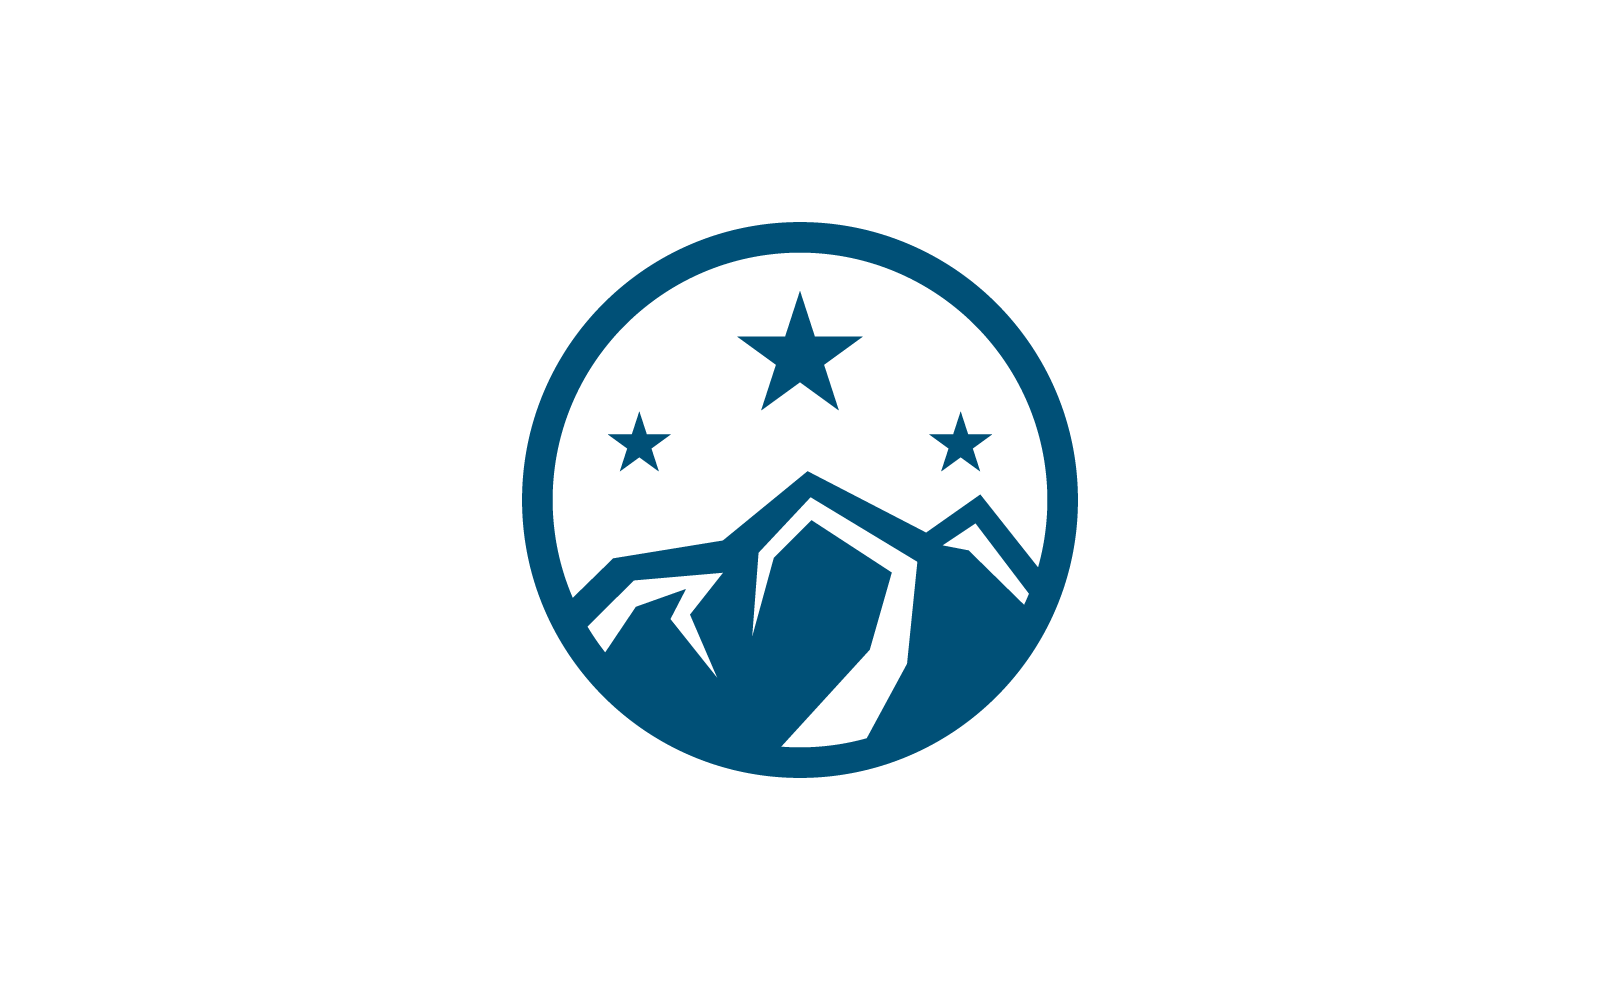 Шаблон векторной иллюстрации логотипа горы с плоским дизайном